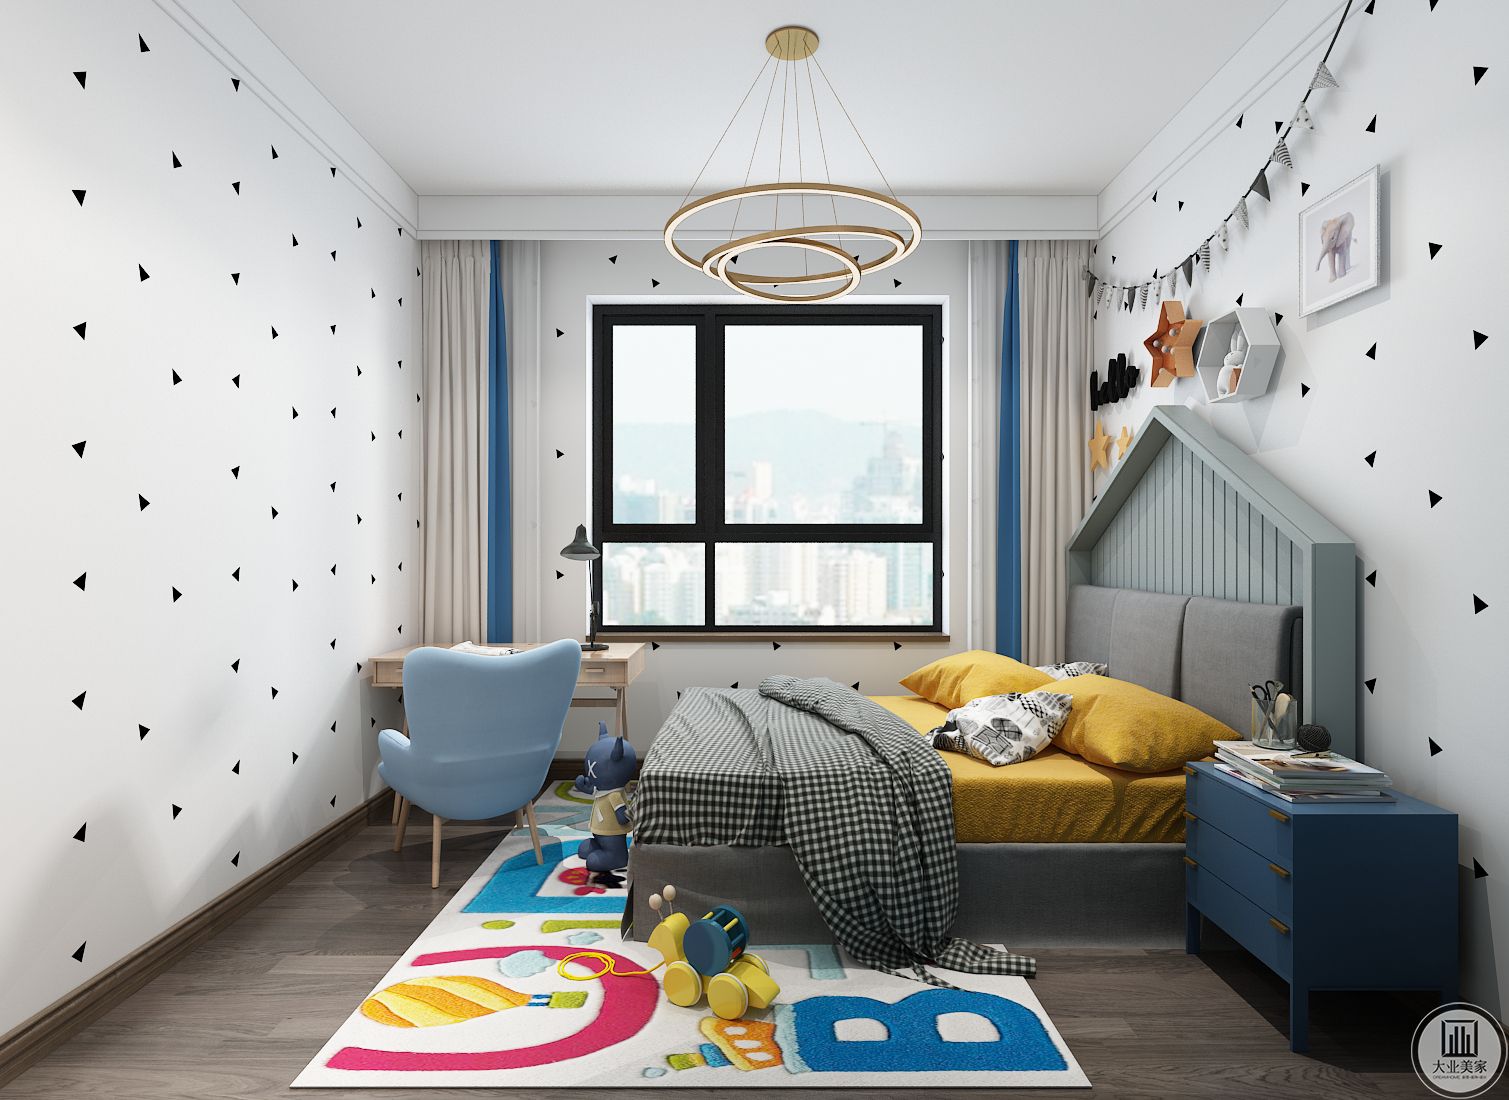 次卧室效果图：次卧室做成儿童卧室，浅色小床搭配深蓝色床头柜，窗户旁边就是木质书桌椅子。